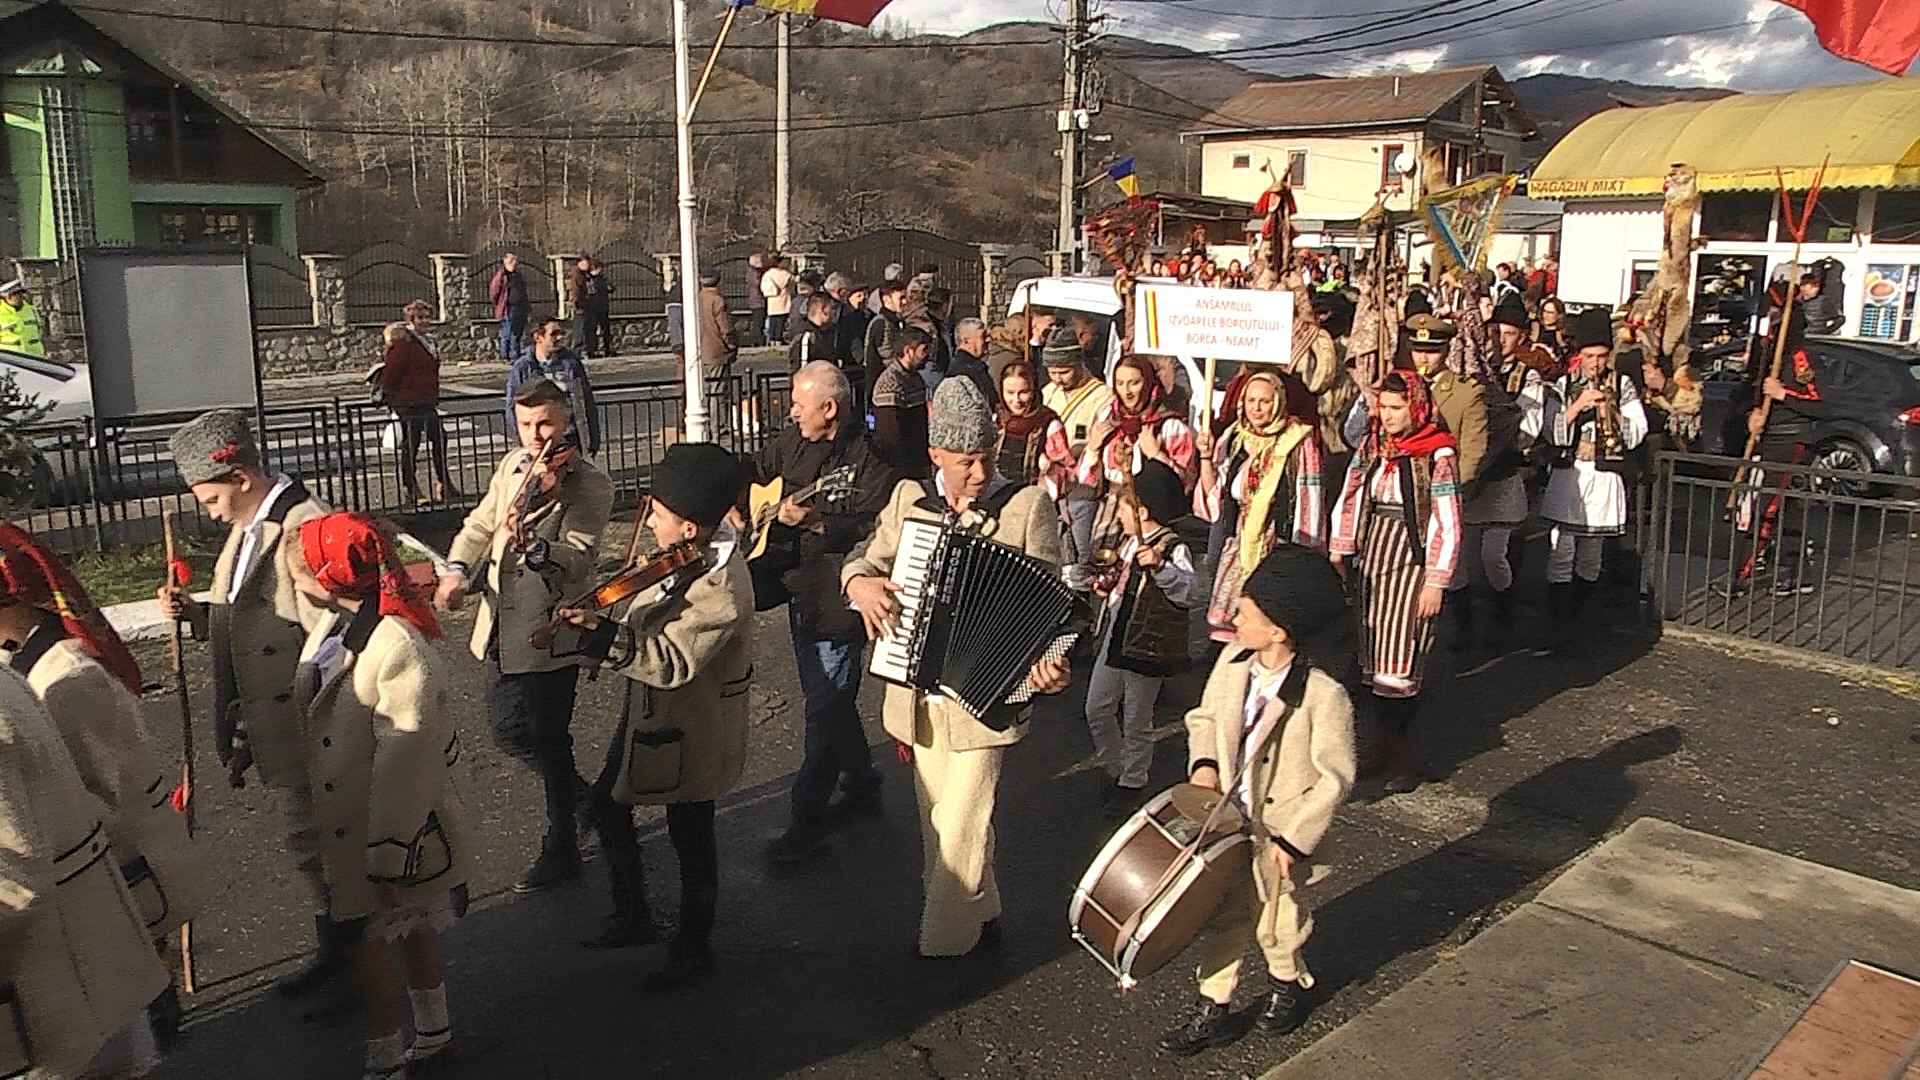 E vremea Colindelor, pe 18 decembrie, comuna Moroeni găzduiește Festivalul Colindelor